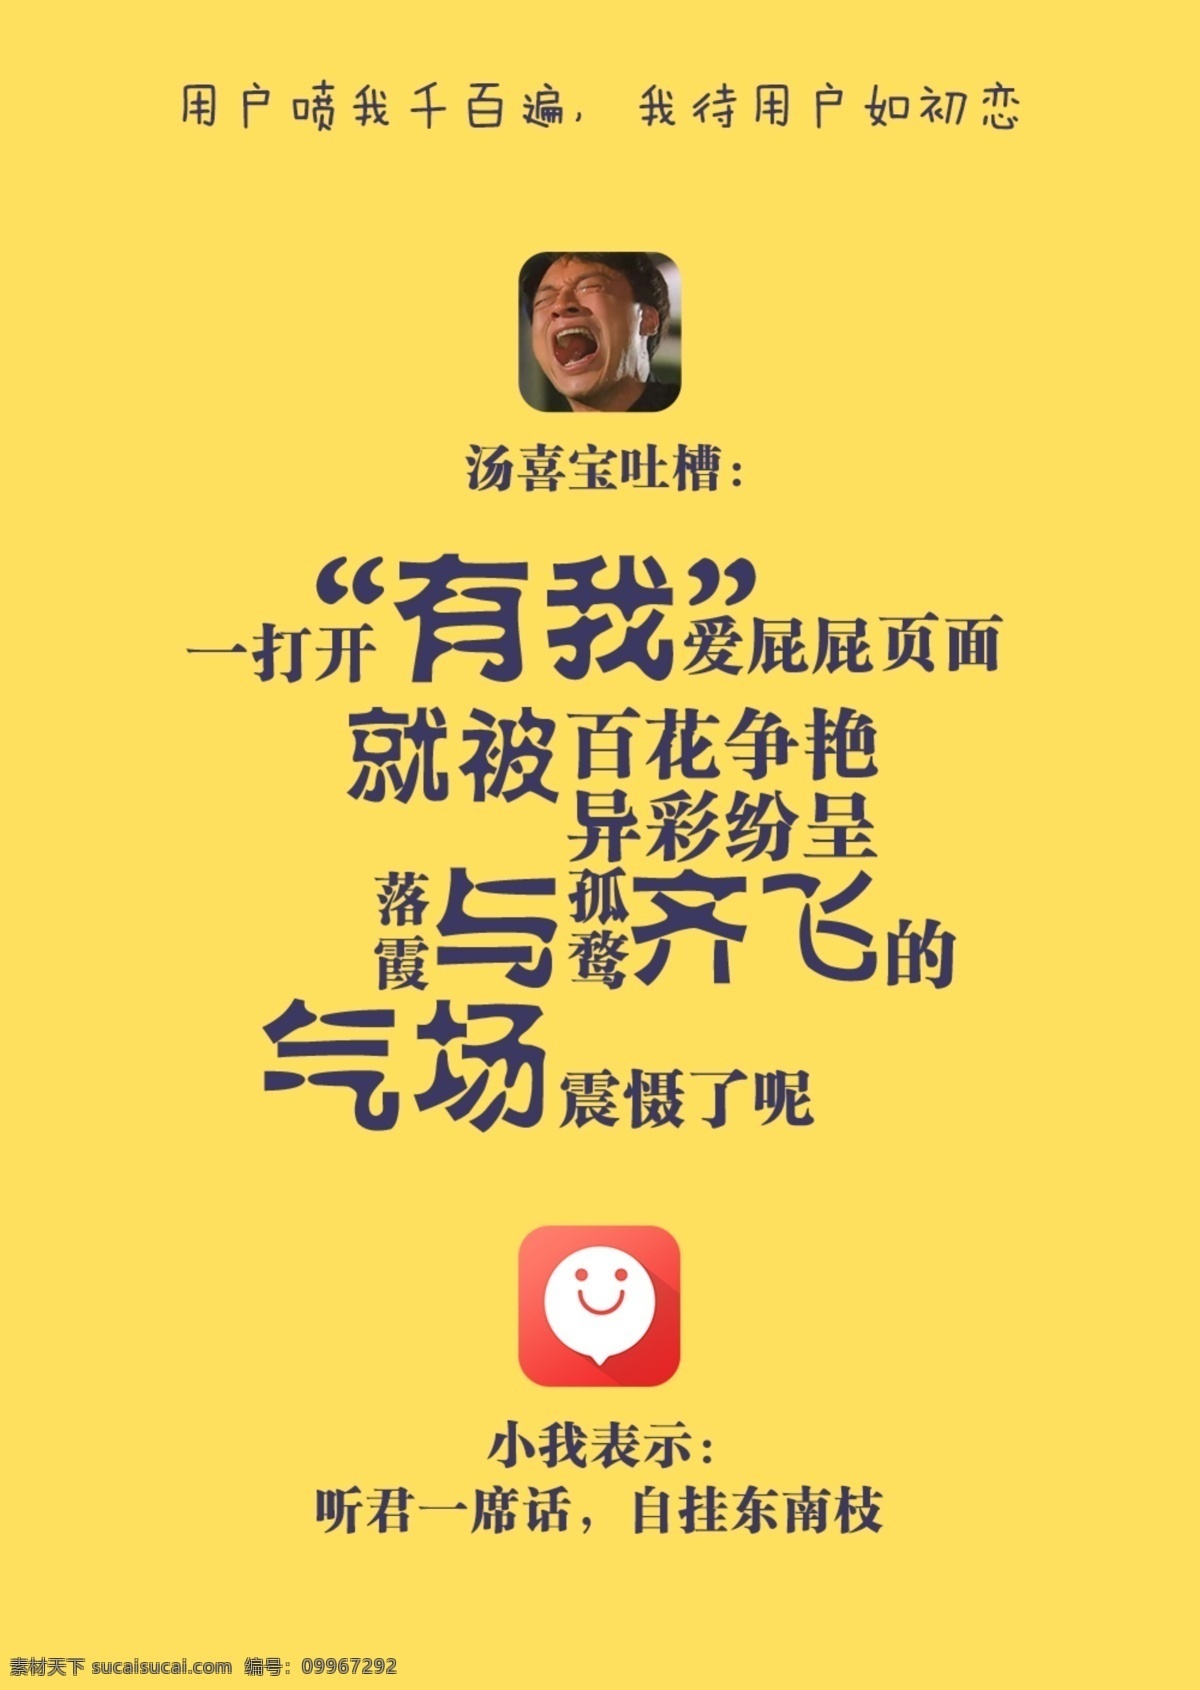 app 黑 宣传海报 纯 文字 简约 风 宣传 海报 淘宝素材 淘宝设计 淘宝模板下载 黄色